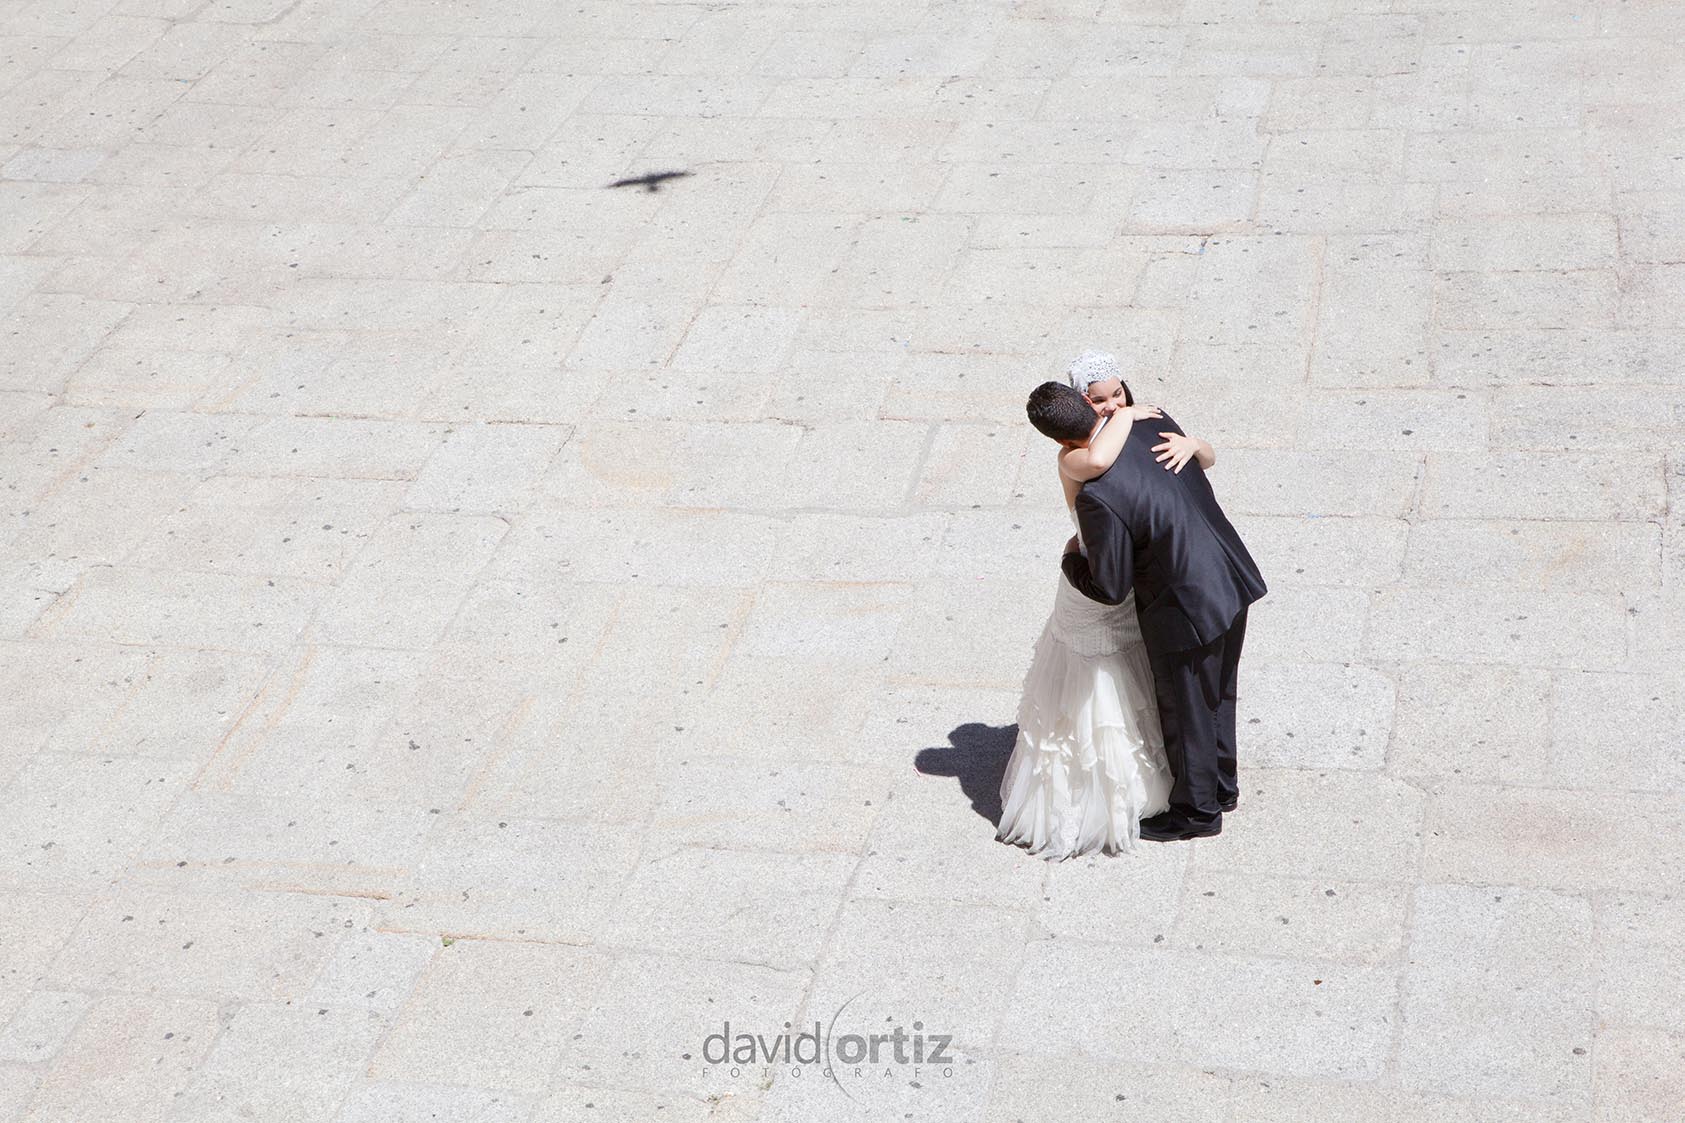 Fotografía y reportaje de la boda de Hassan y Montaña en Cáceres, realizado por David Ortiz Fotógrafo en Cáceres.